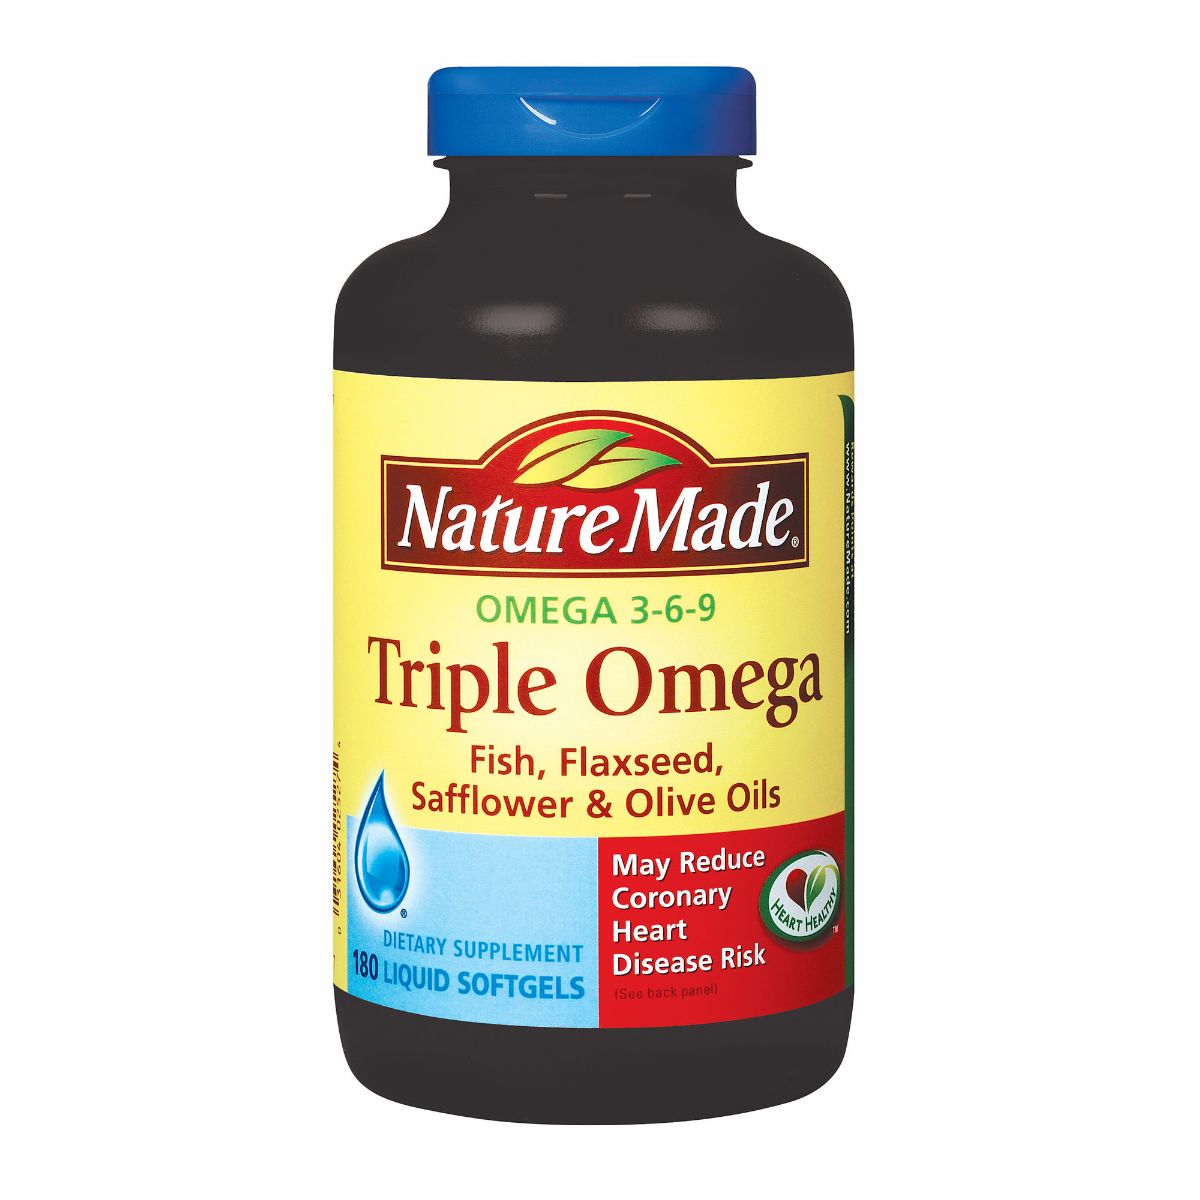 Viên uống Omega 3-6-9 Nature Made Triple Omega - Bảo vệ trái tim bạn luôn khỏe mạnh